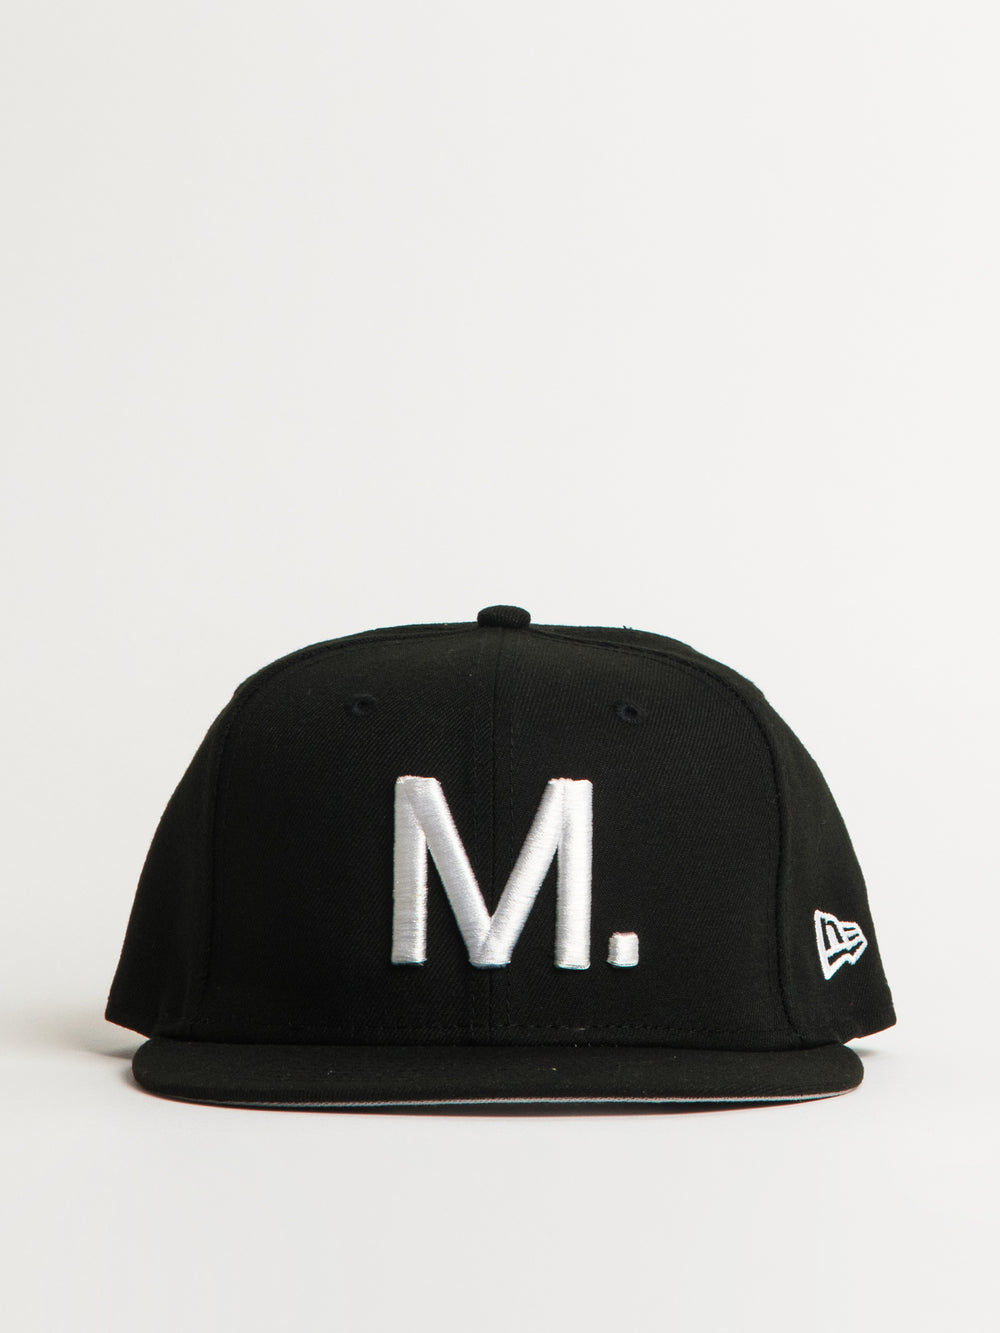 MUNICIPAL M. HAT - BLACK/NOIR